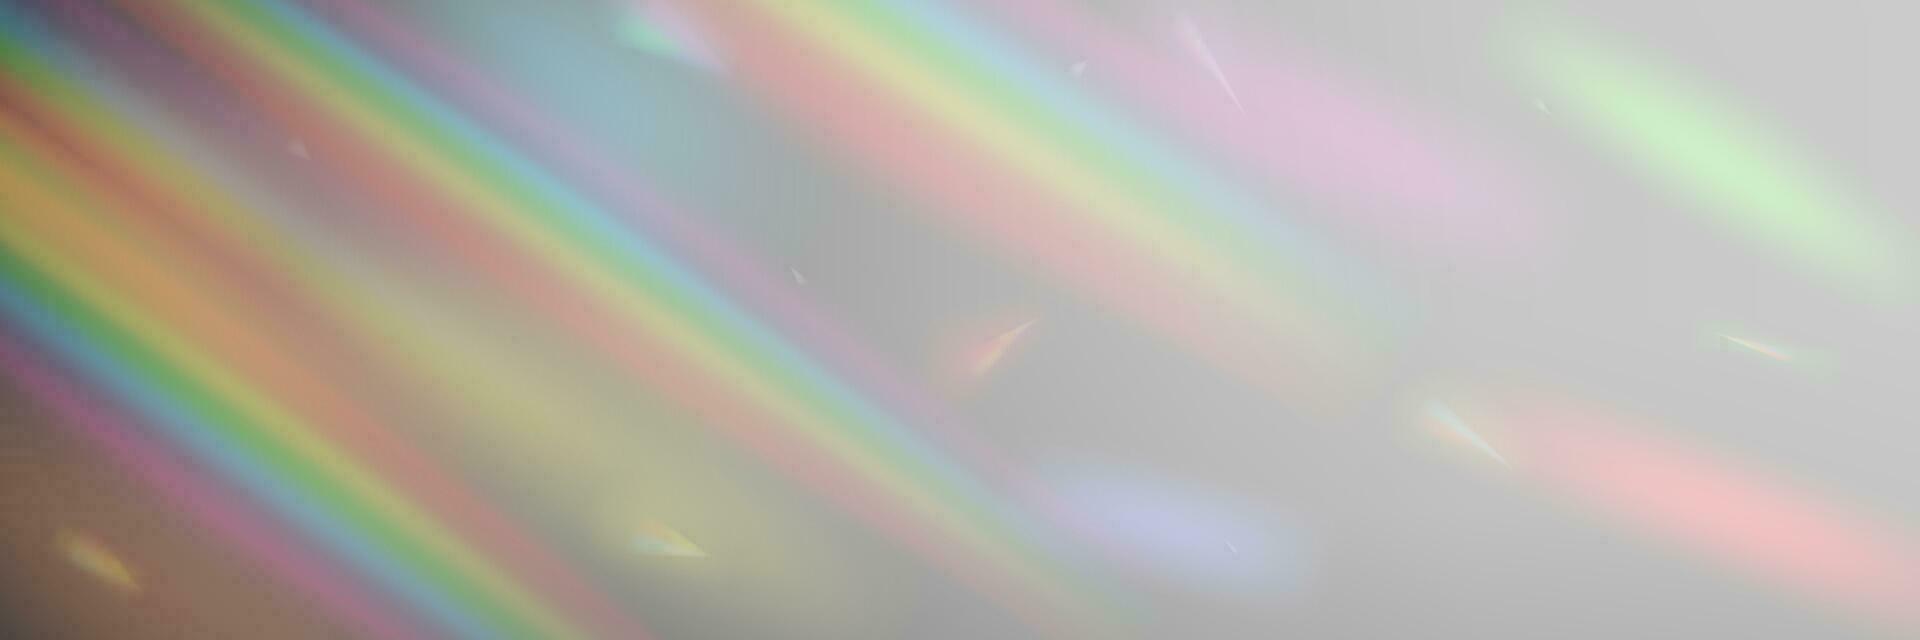 regenboog licht prisma effect, transparant etherisch dromerig aura achtergrond. hologram reflectie, kristal gloed lekken schaduw overlappen. vector illustratie van abstract wazig iriserend licht achtergrond.